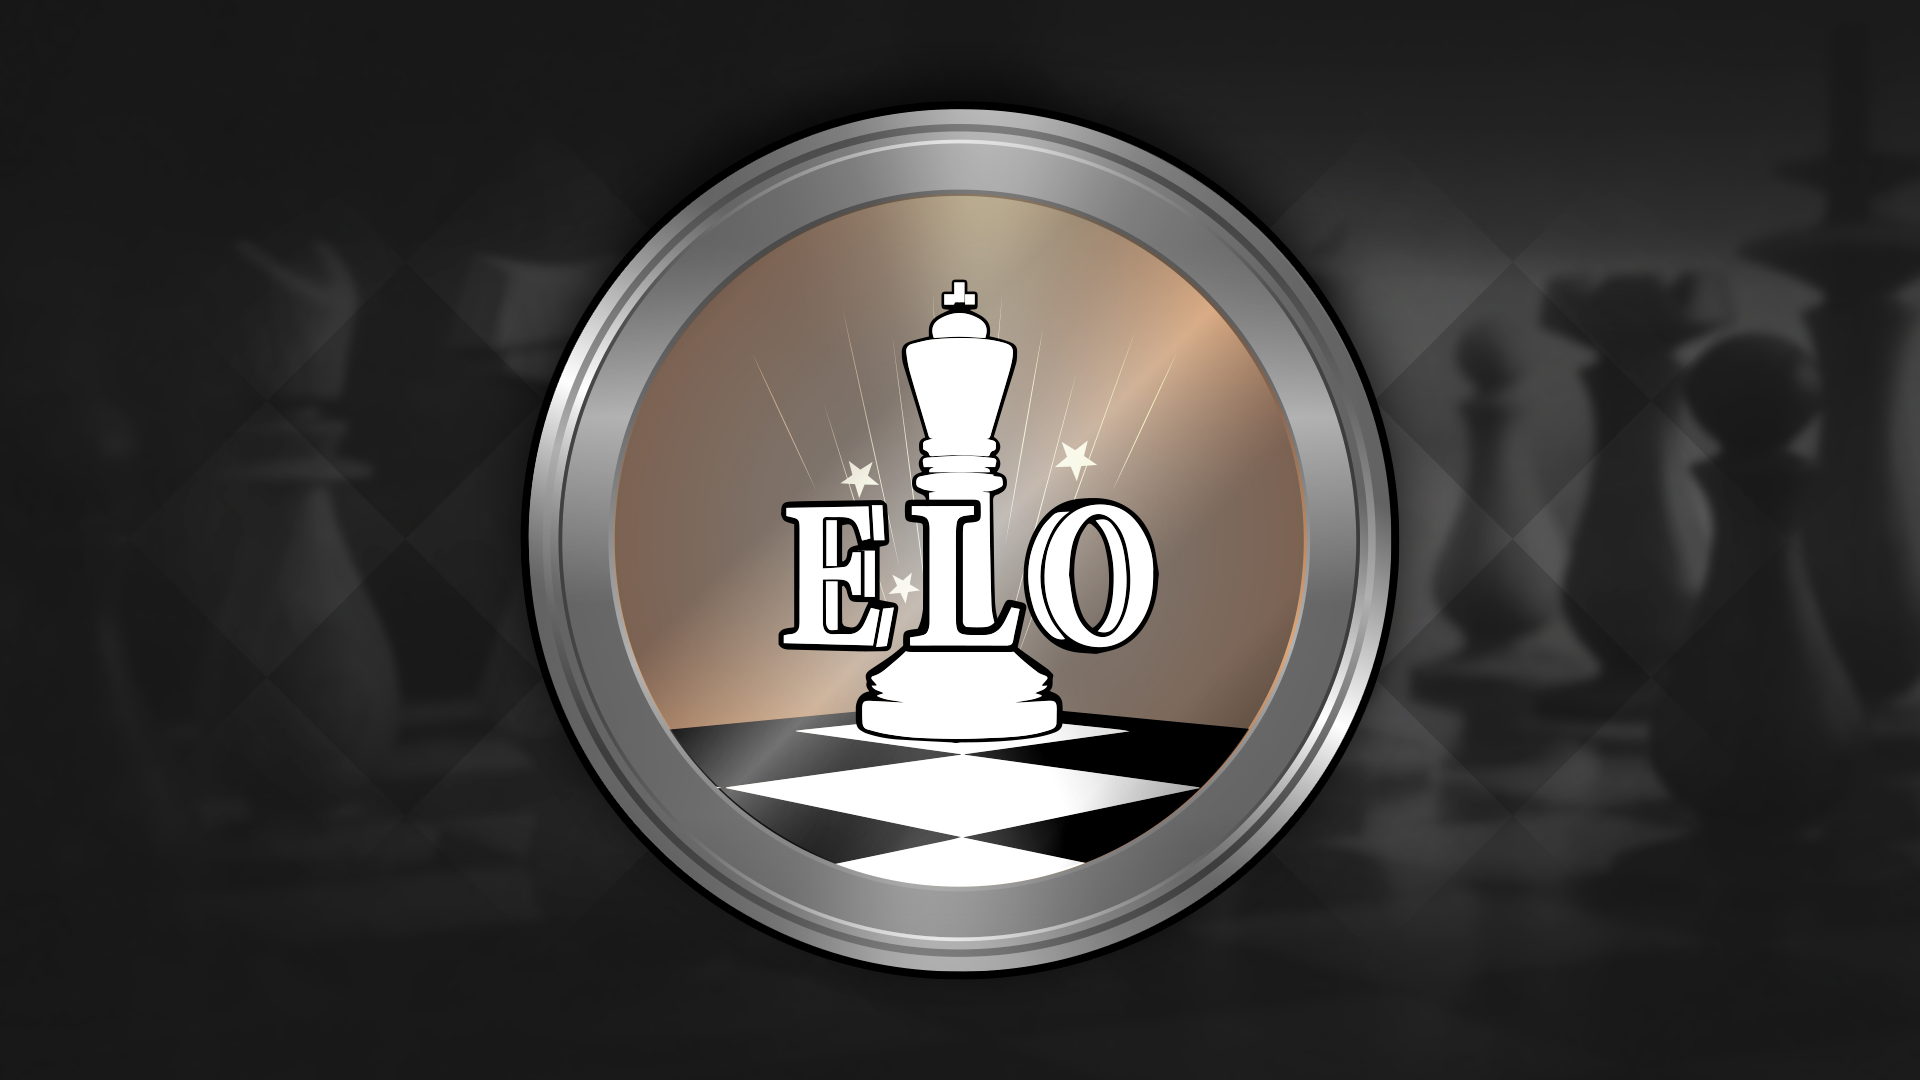 Icon for Elo Elo